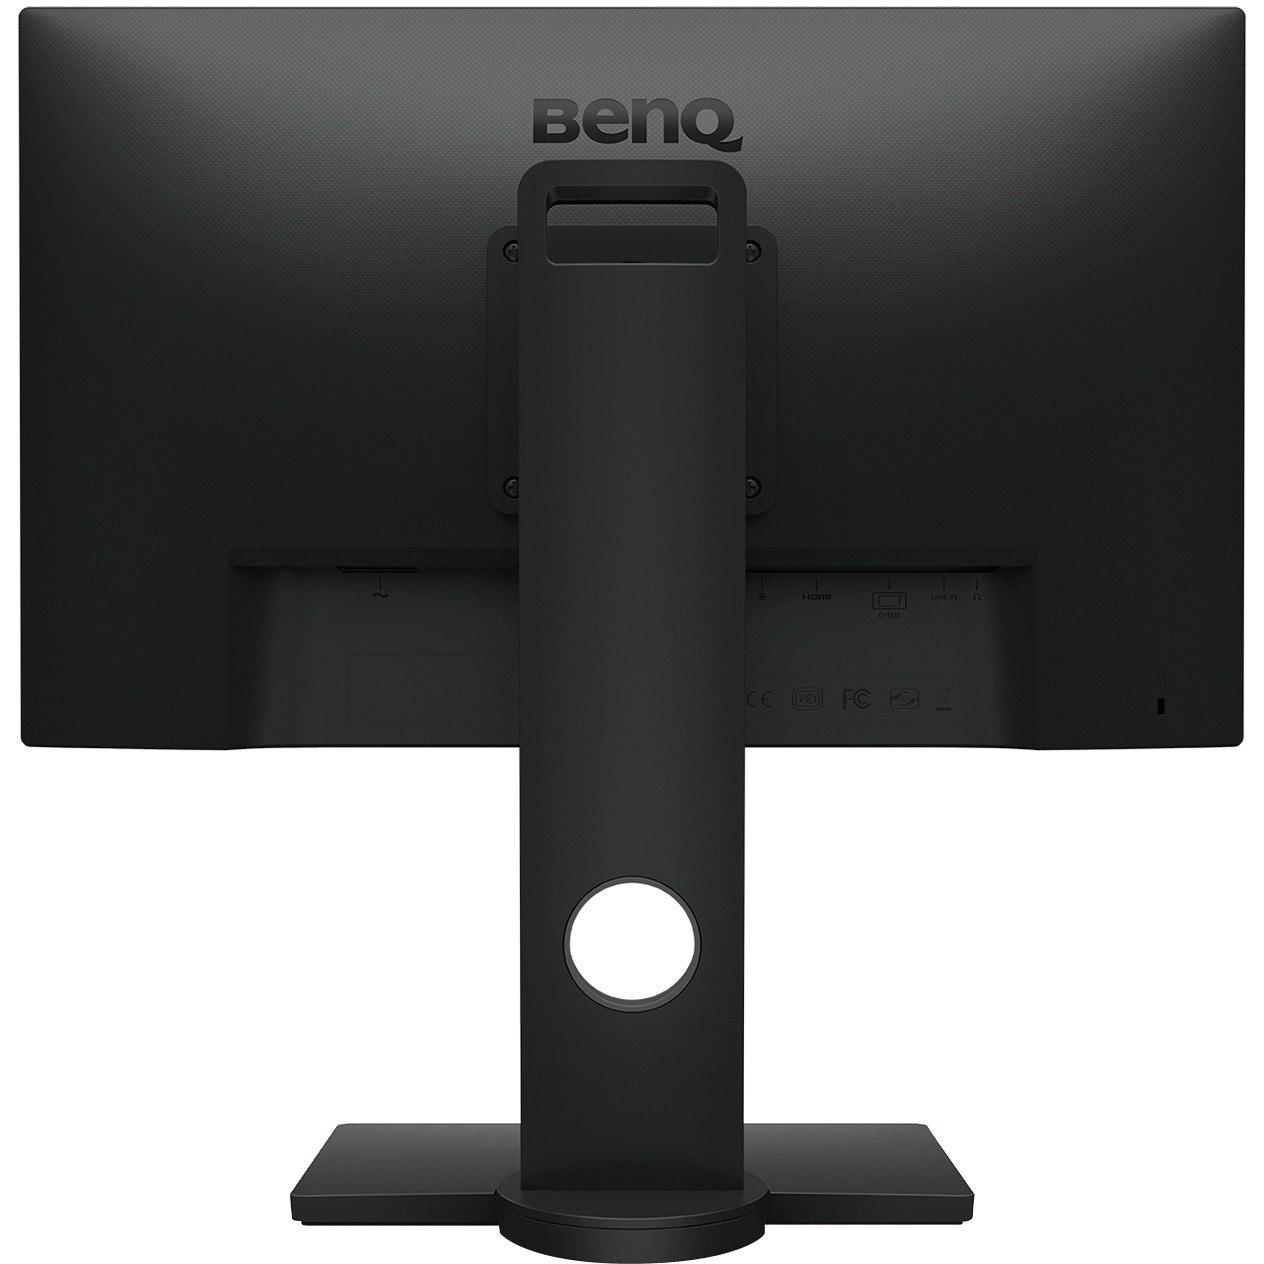 BenQ GW2480T 24" Class Full HD LCD Monitor - 16:9 - Black